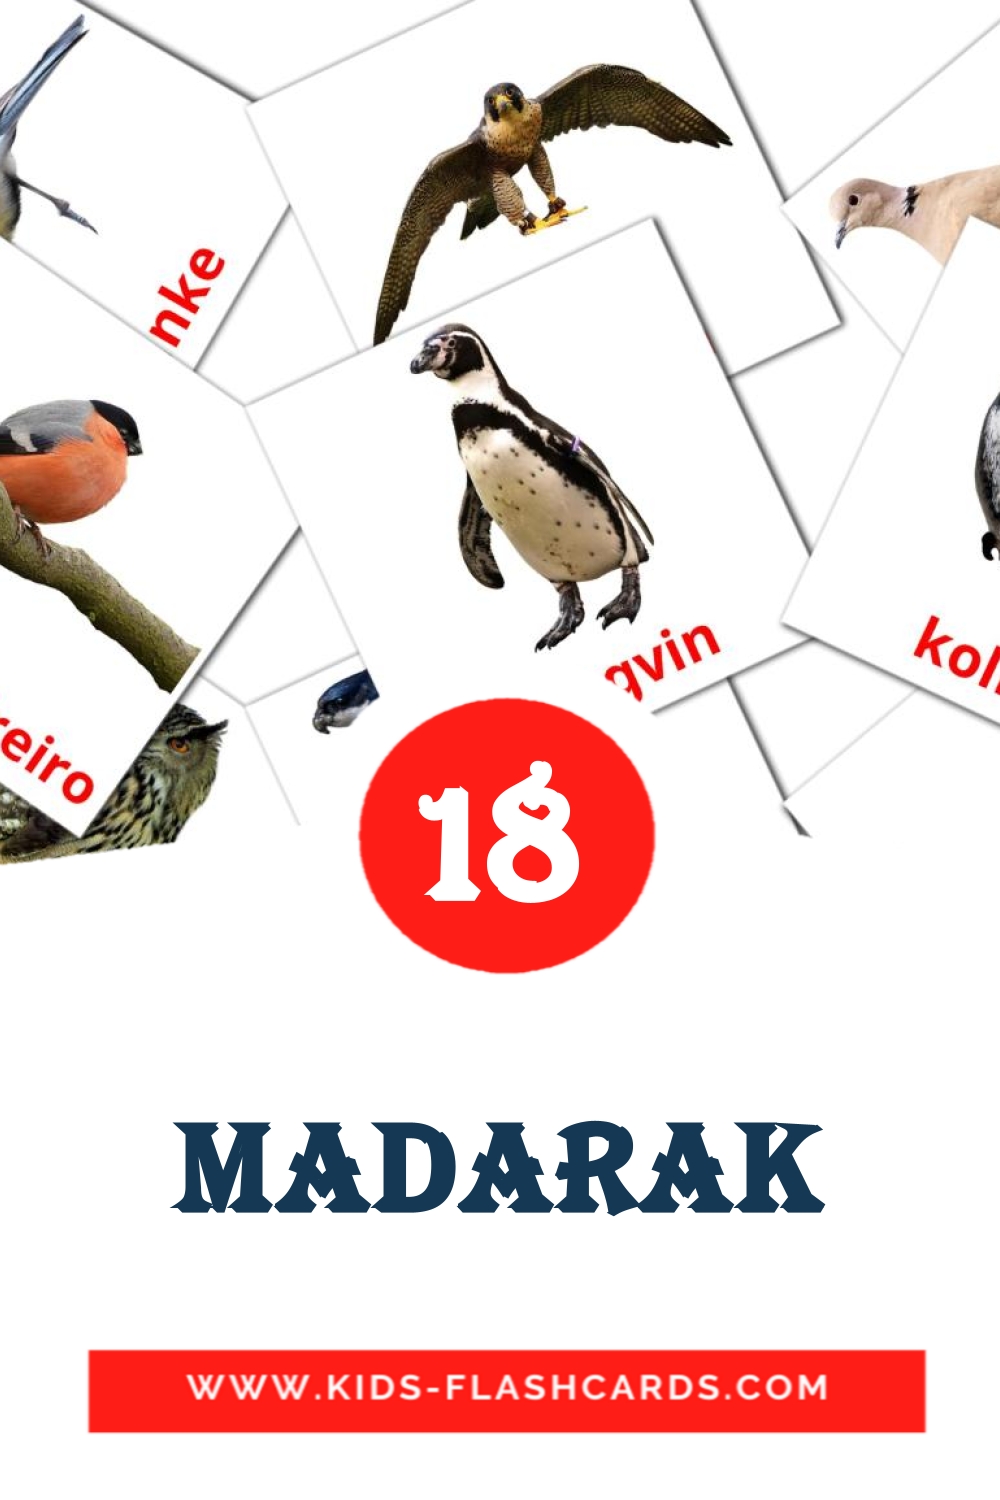 madarak на амхарском для Детского Сада (18 карточек)